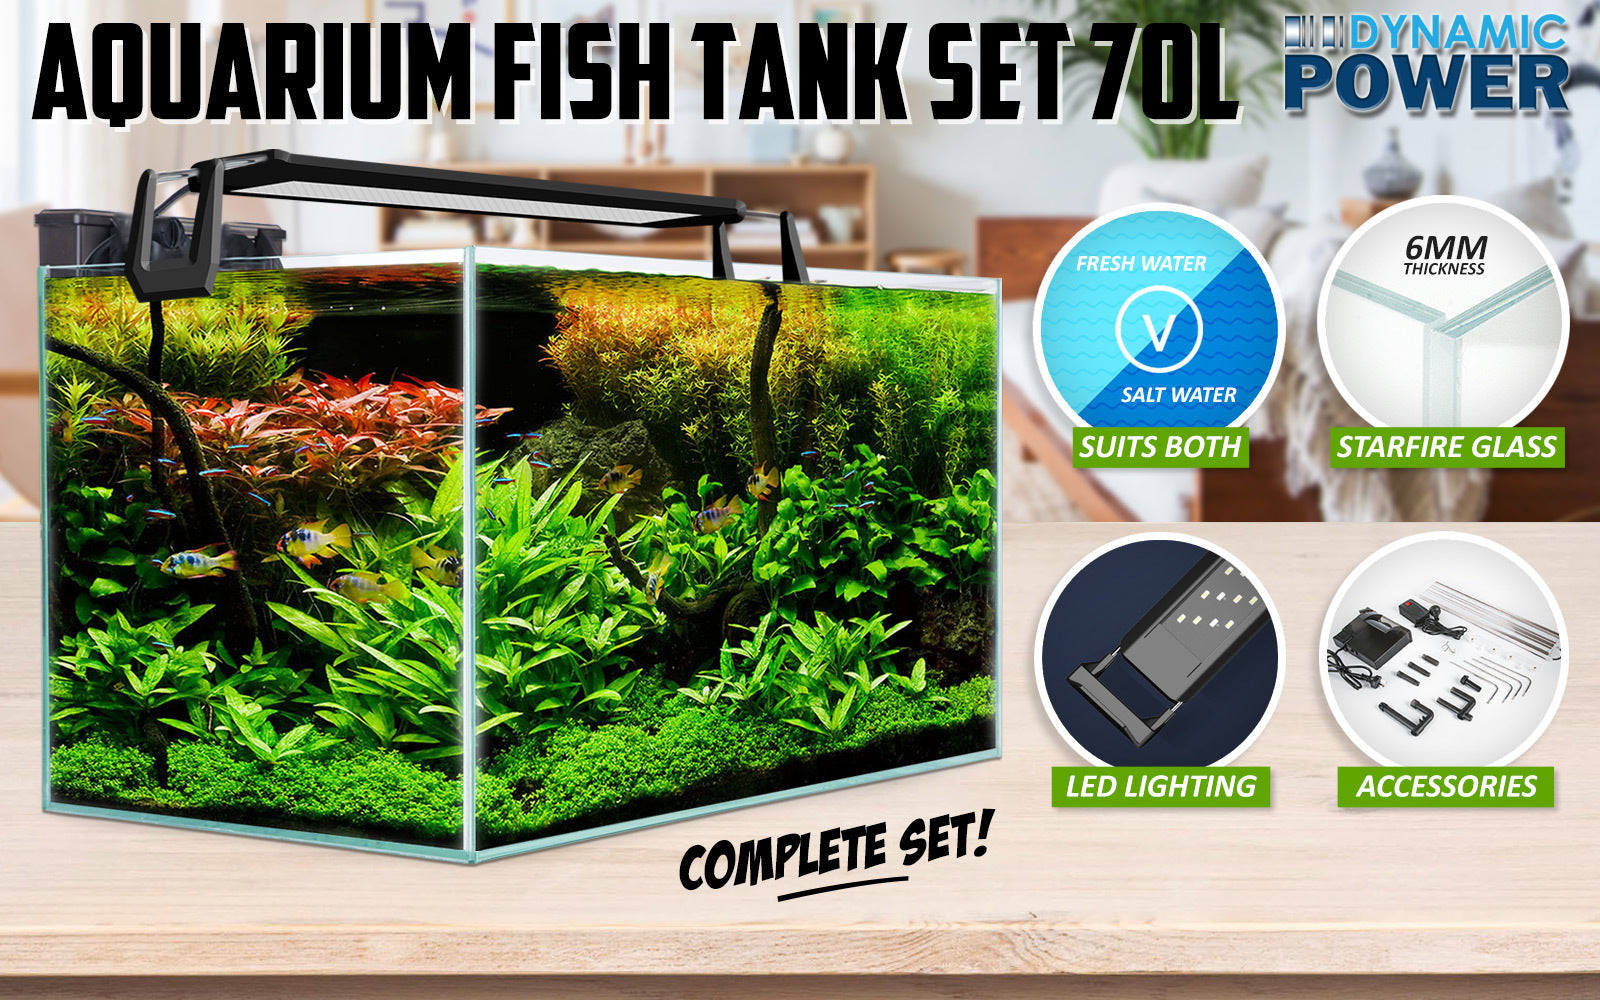 Aquarium Starfire Glass Fish Tank Set Filter Pump 70L - 0